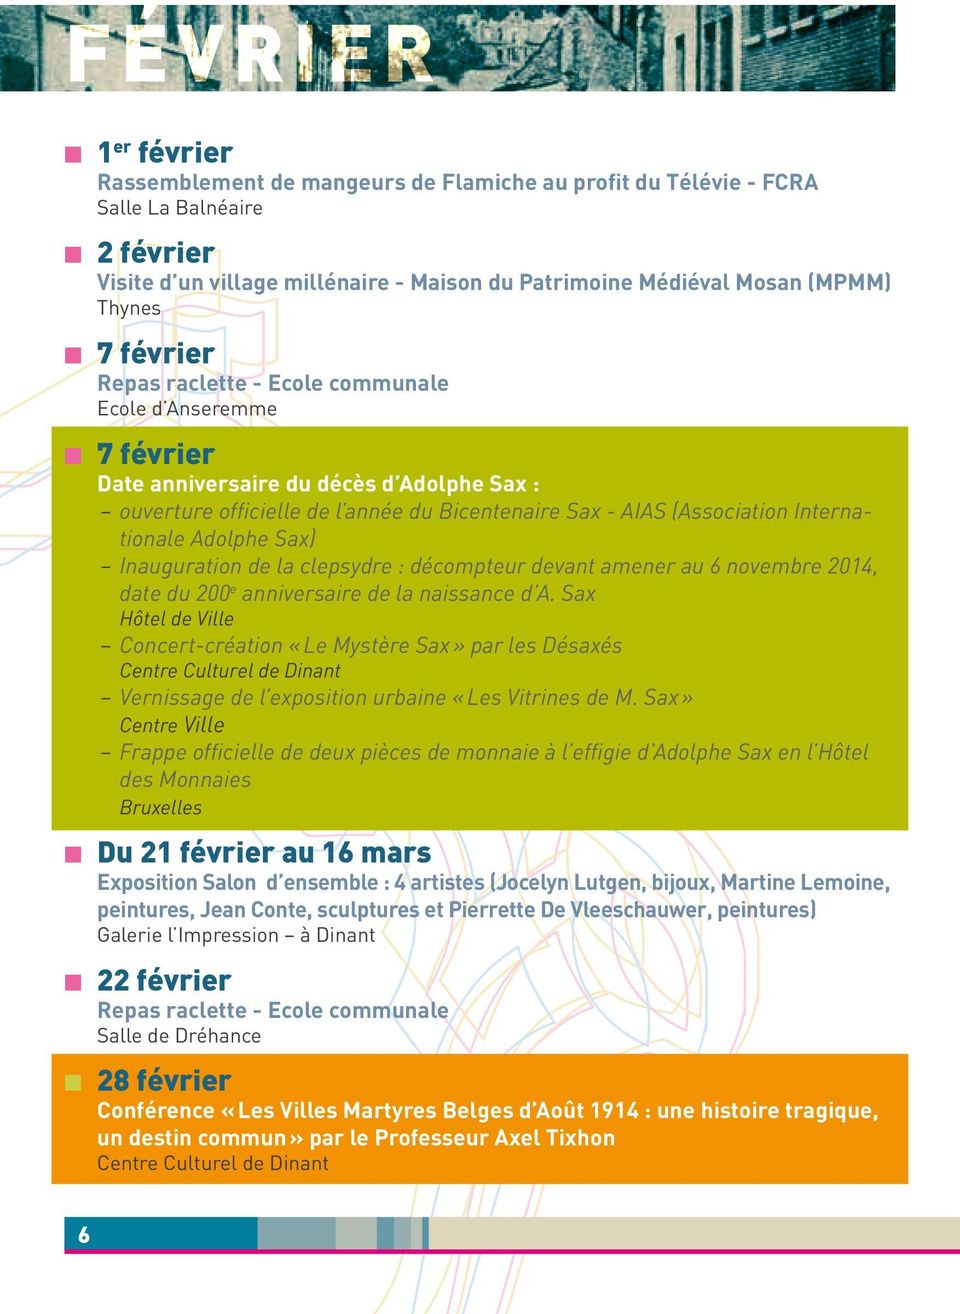 Internationale Adolphe Sax) Inauguration de la clepsydre : décompteur devant amener au 6 novembre 2014, date du 200 e anniversaire de la naissance d A.